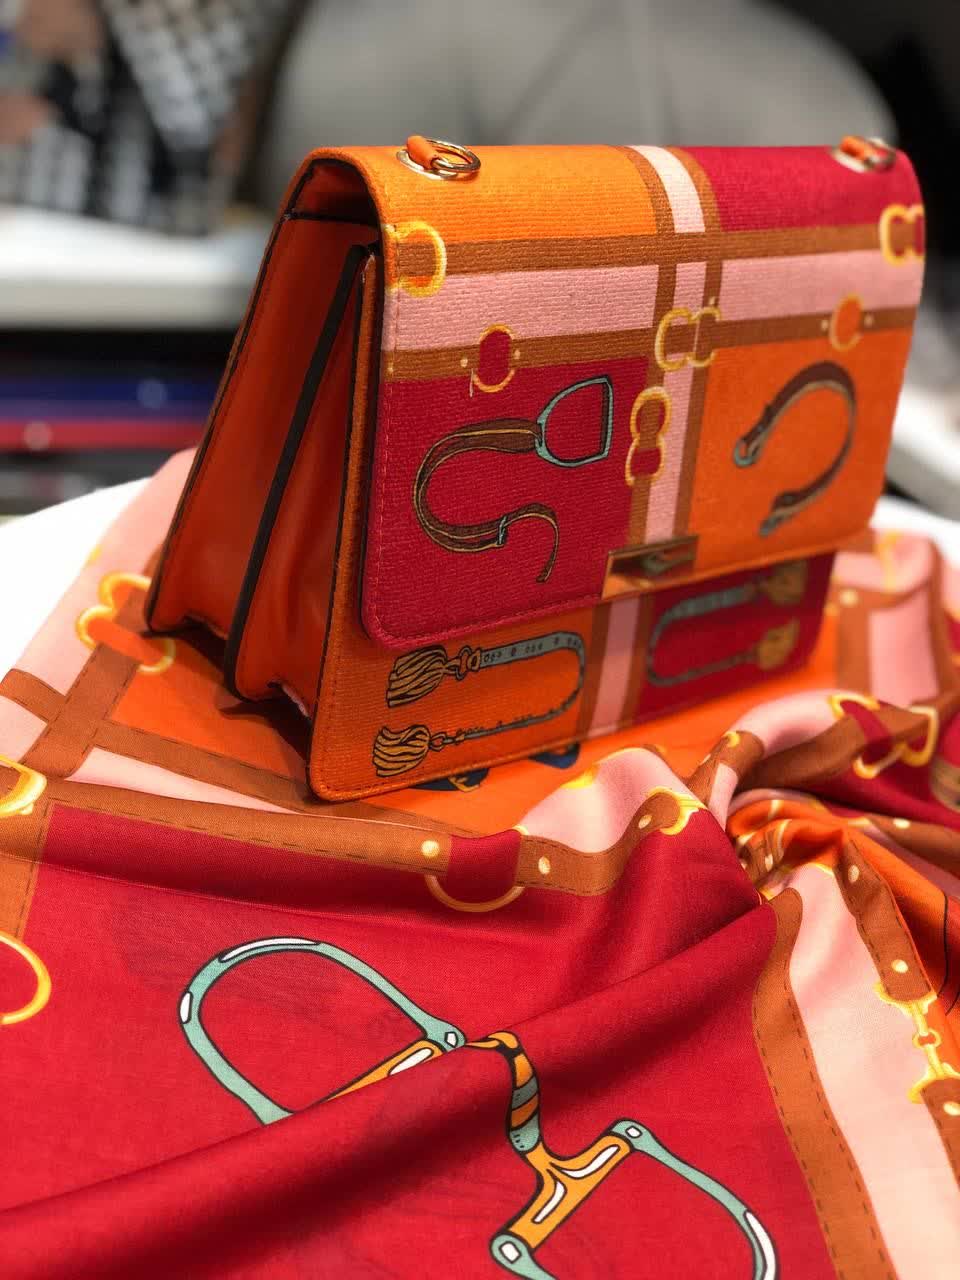 ست کیف و روسری و زنانه باکیفیت رنگ نارنجی طرح هرمس کمربندی با کیف پاسپورتی دسته زنجیری با ارسال رایگان کد mo297